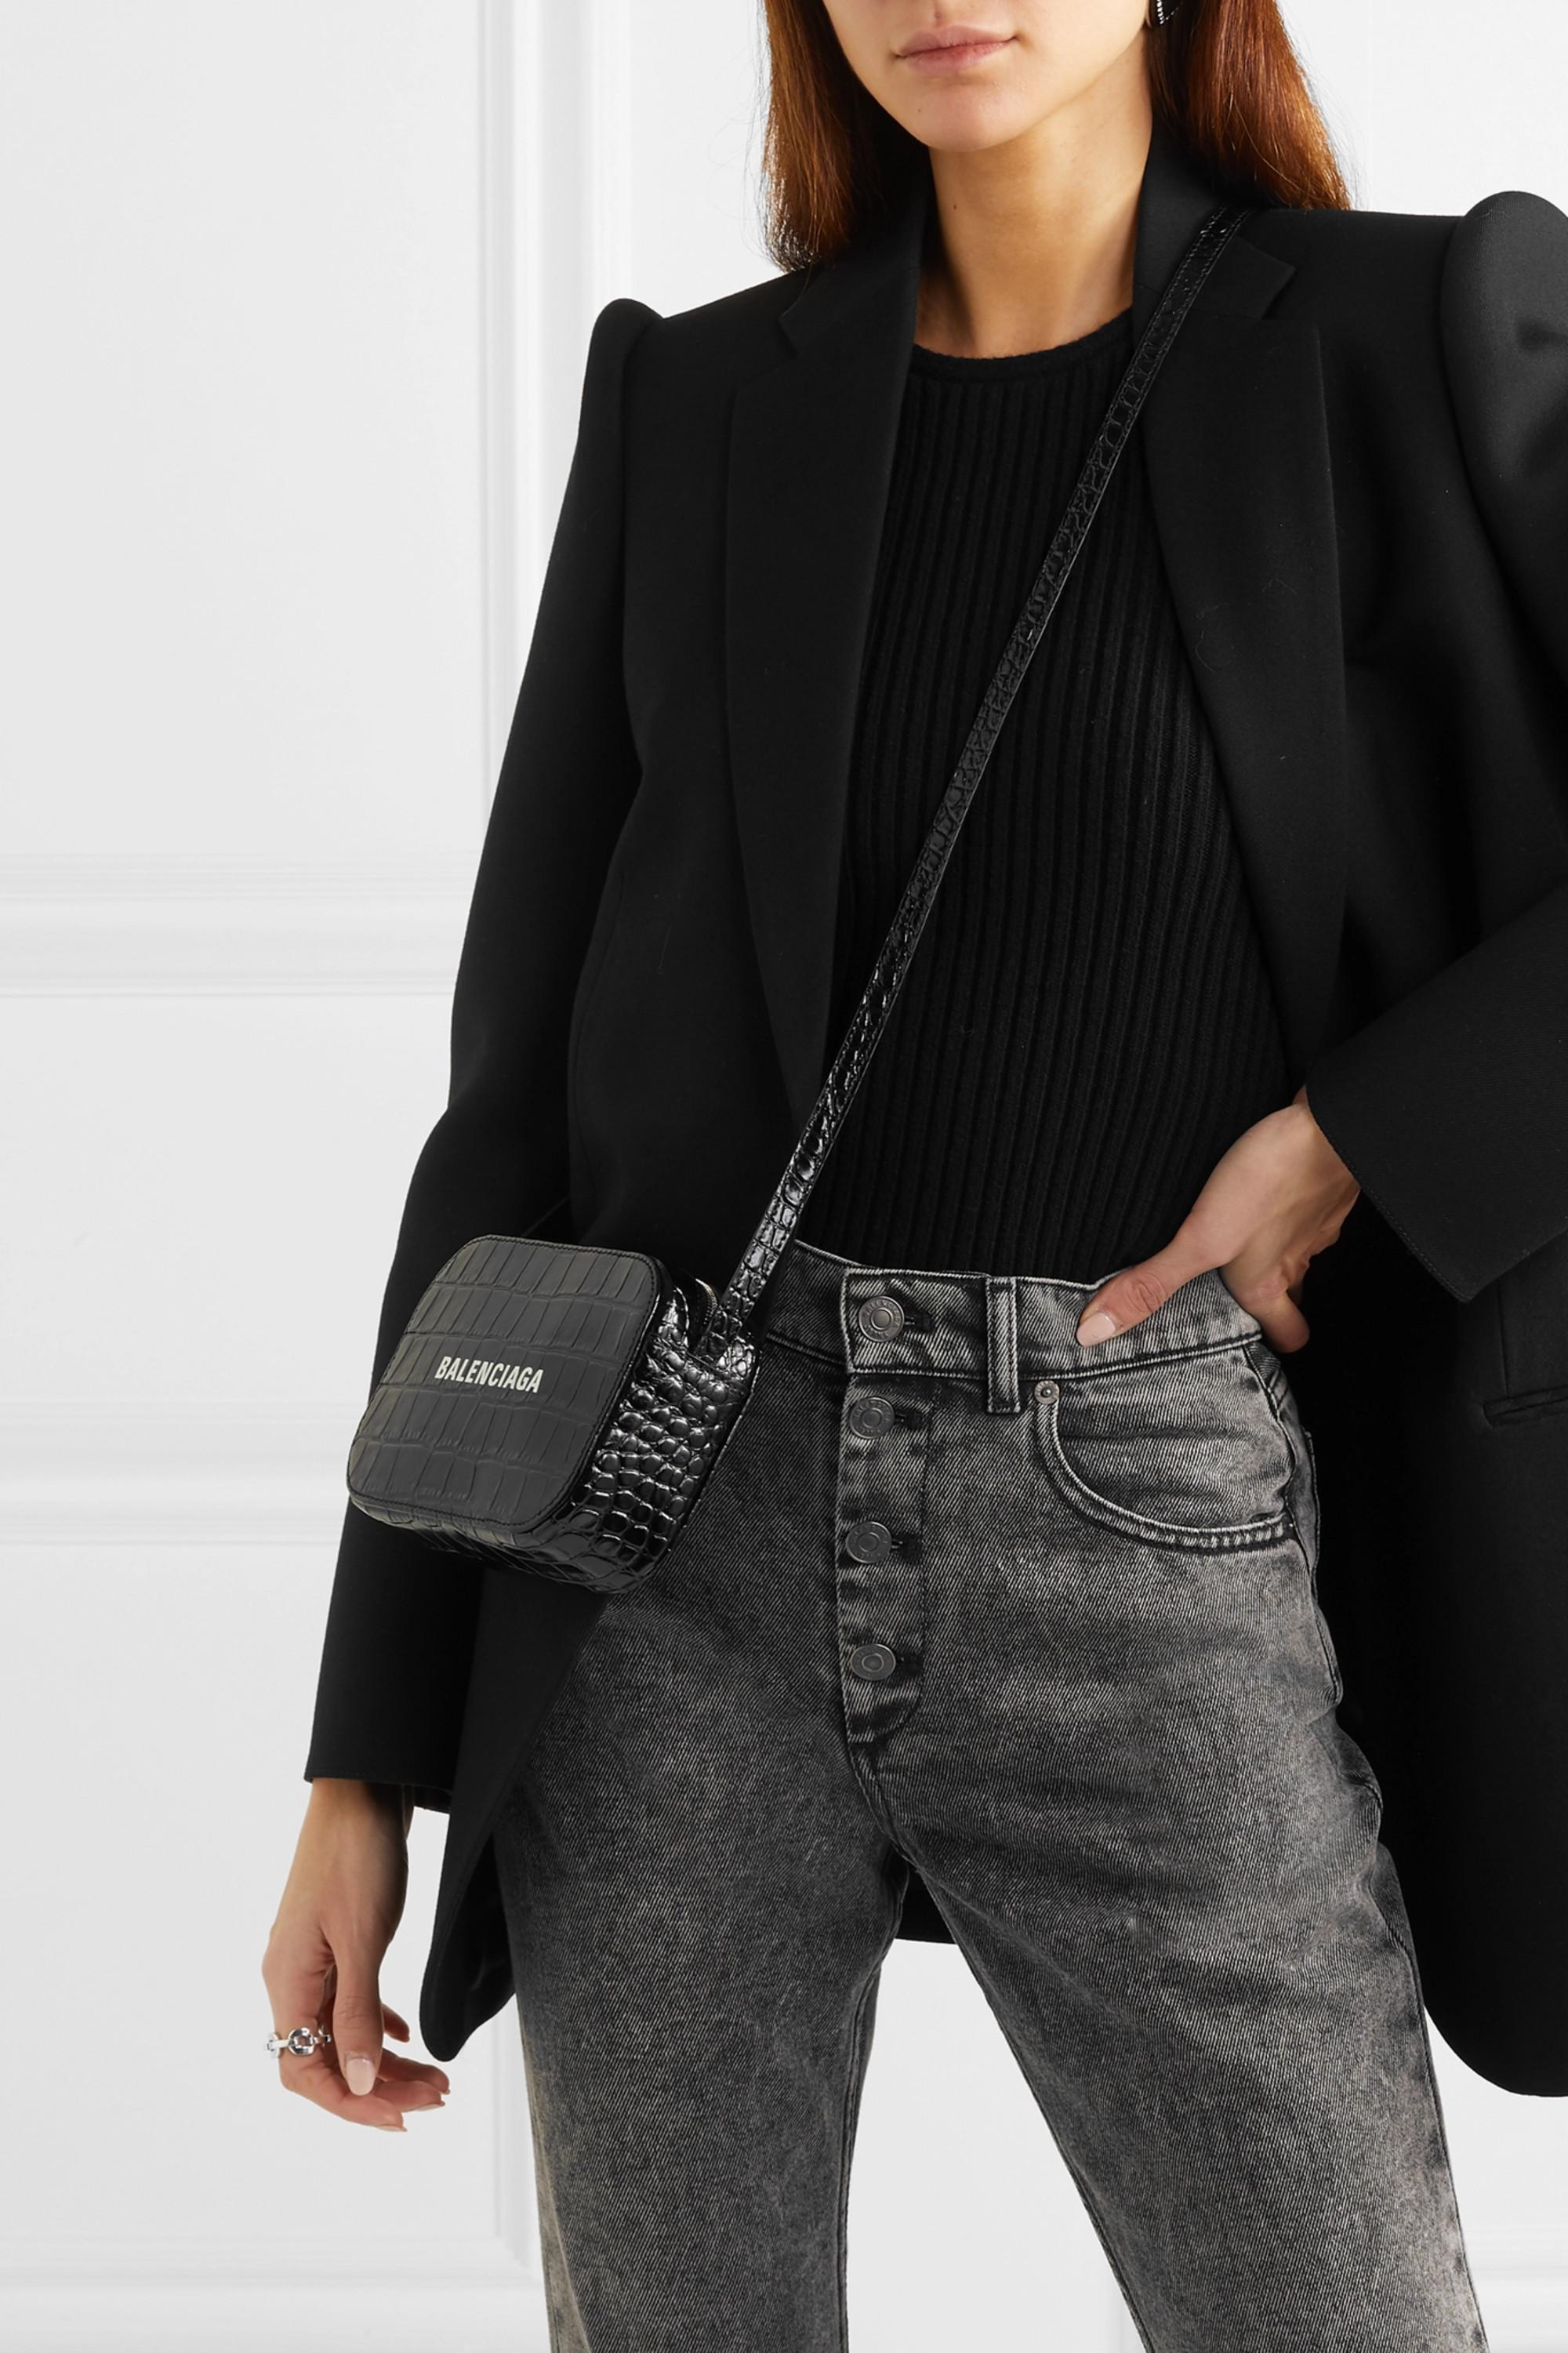 Balenciaga Everyday Xs Aj Printed Croc-effect Leather Camera Bag in Black |  Lyst